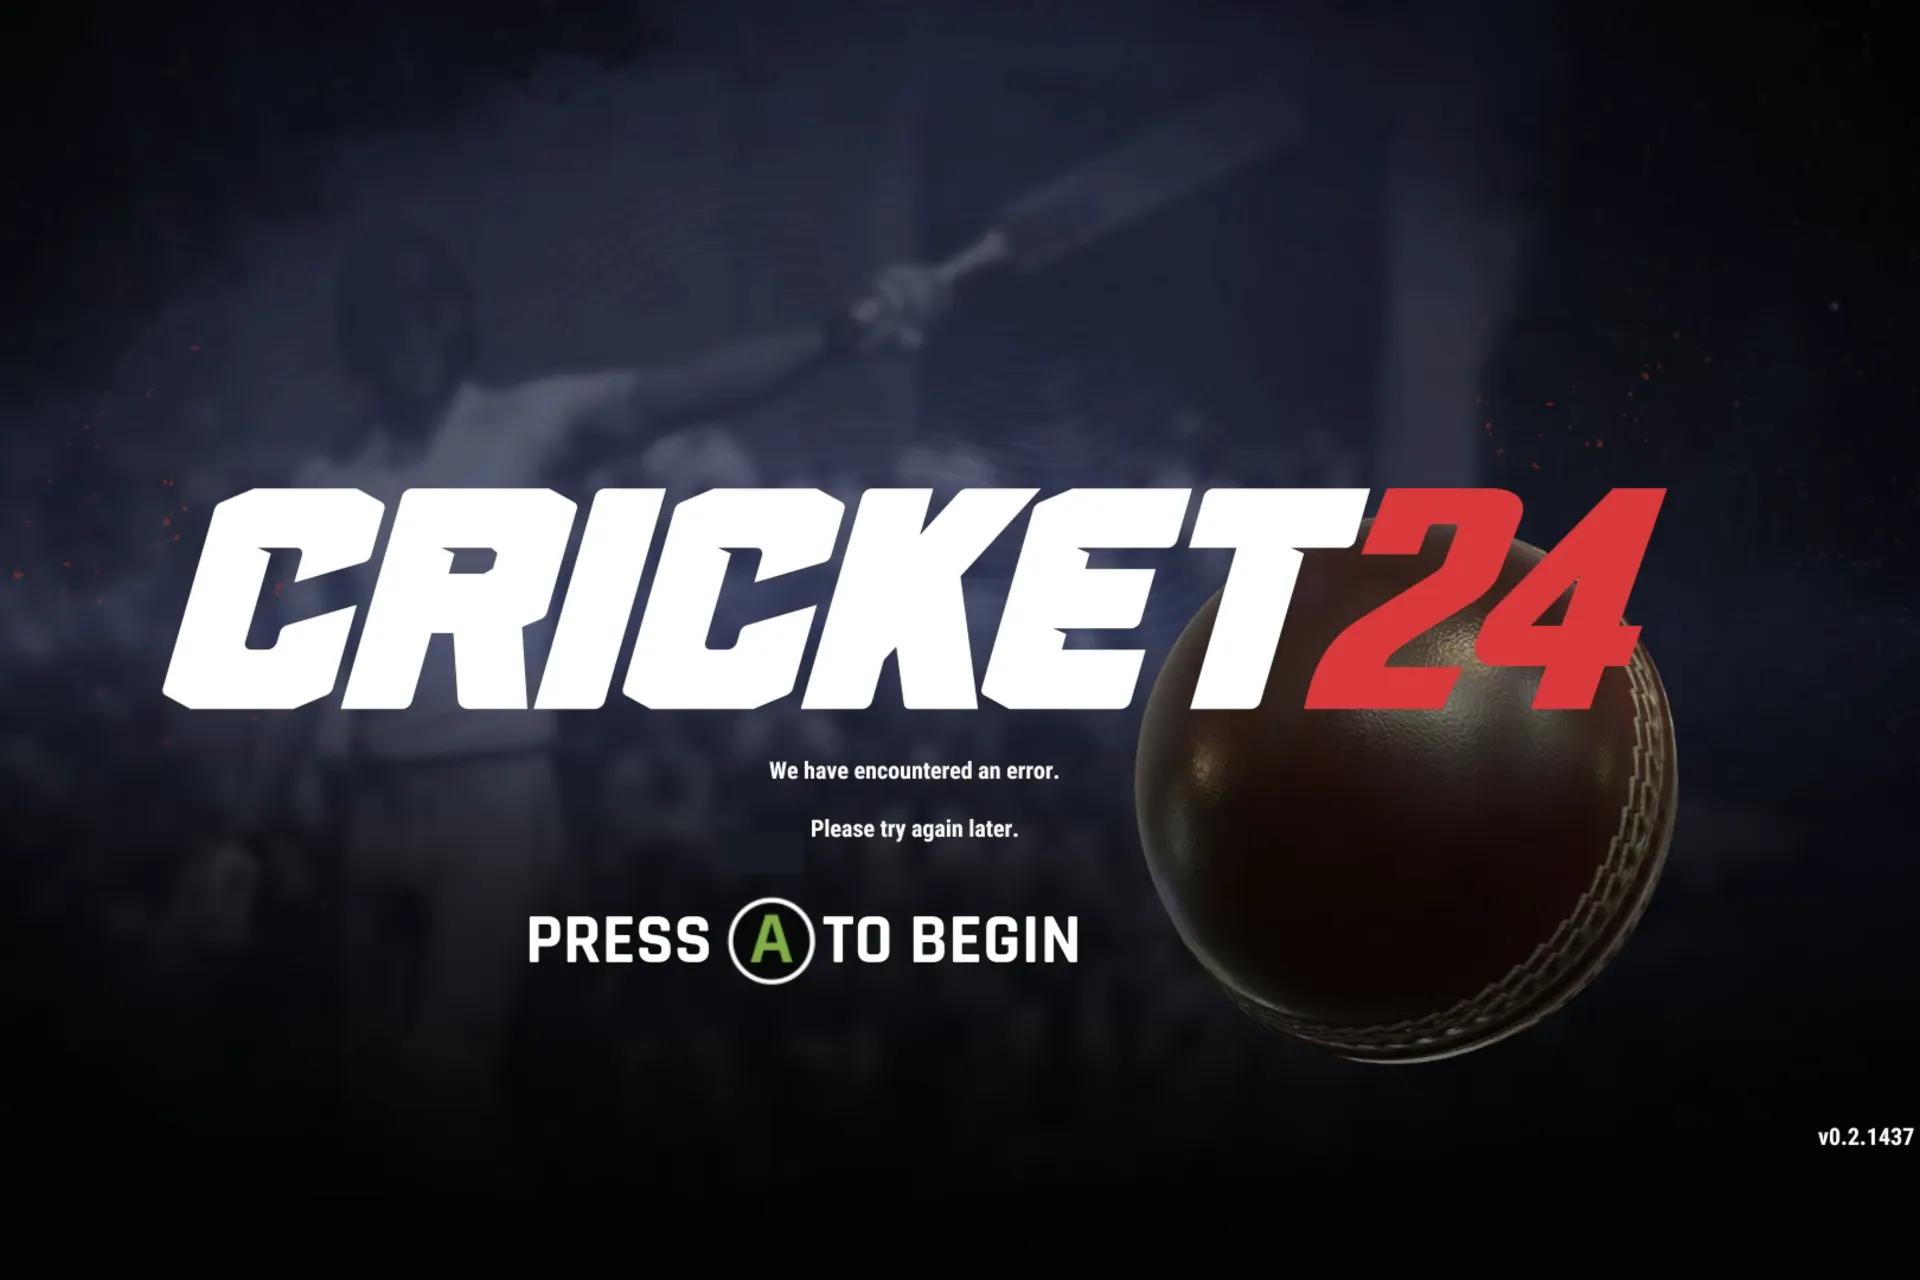 correctif, nous avons rencontré une erreur dans Cricket 24